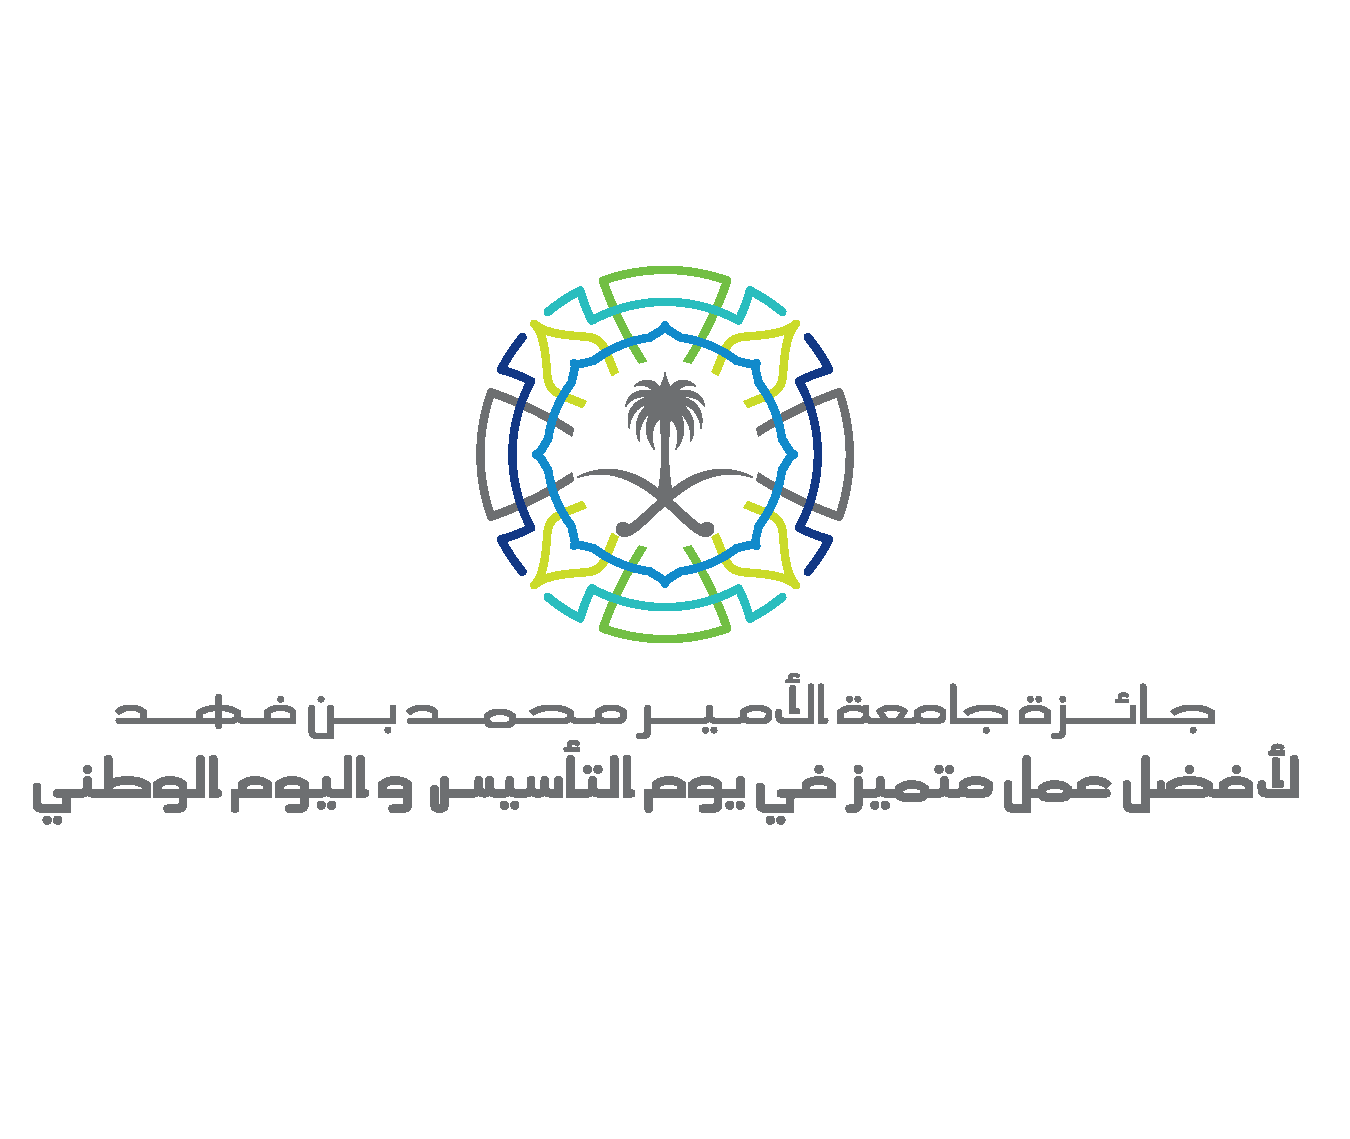 جائزة جامعة الأمير محمد بن فهد لأفضل عمل متميز في اليوم الوطني تنتهي من اختيار ٧٠٦ عملاً للمنافسة على جوائز المسابقة في دورتها الثانية